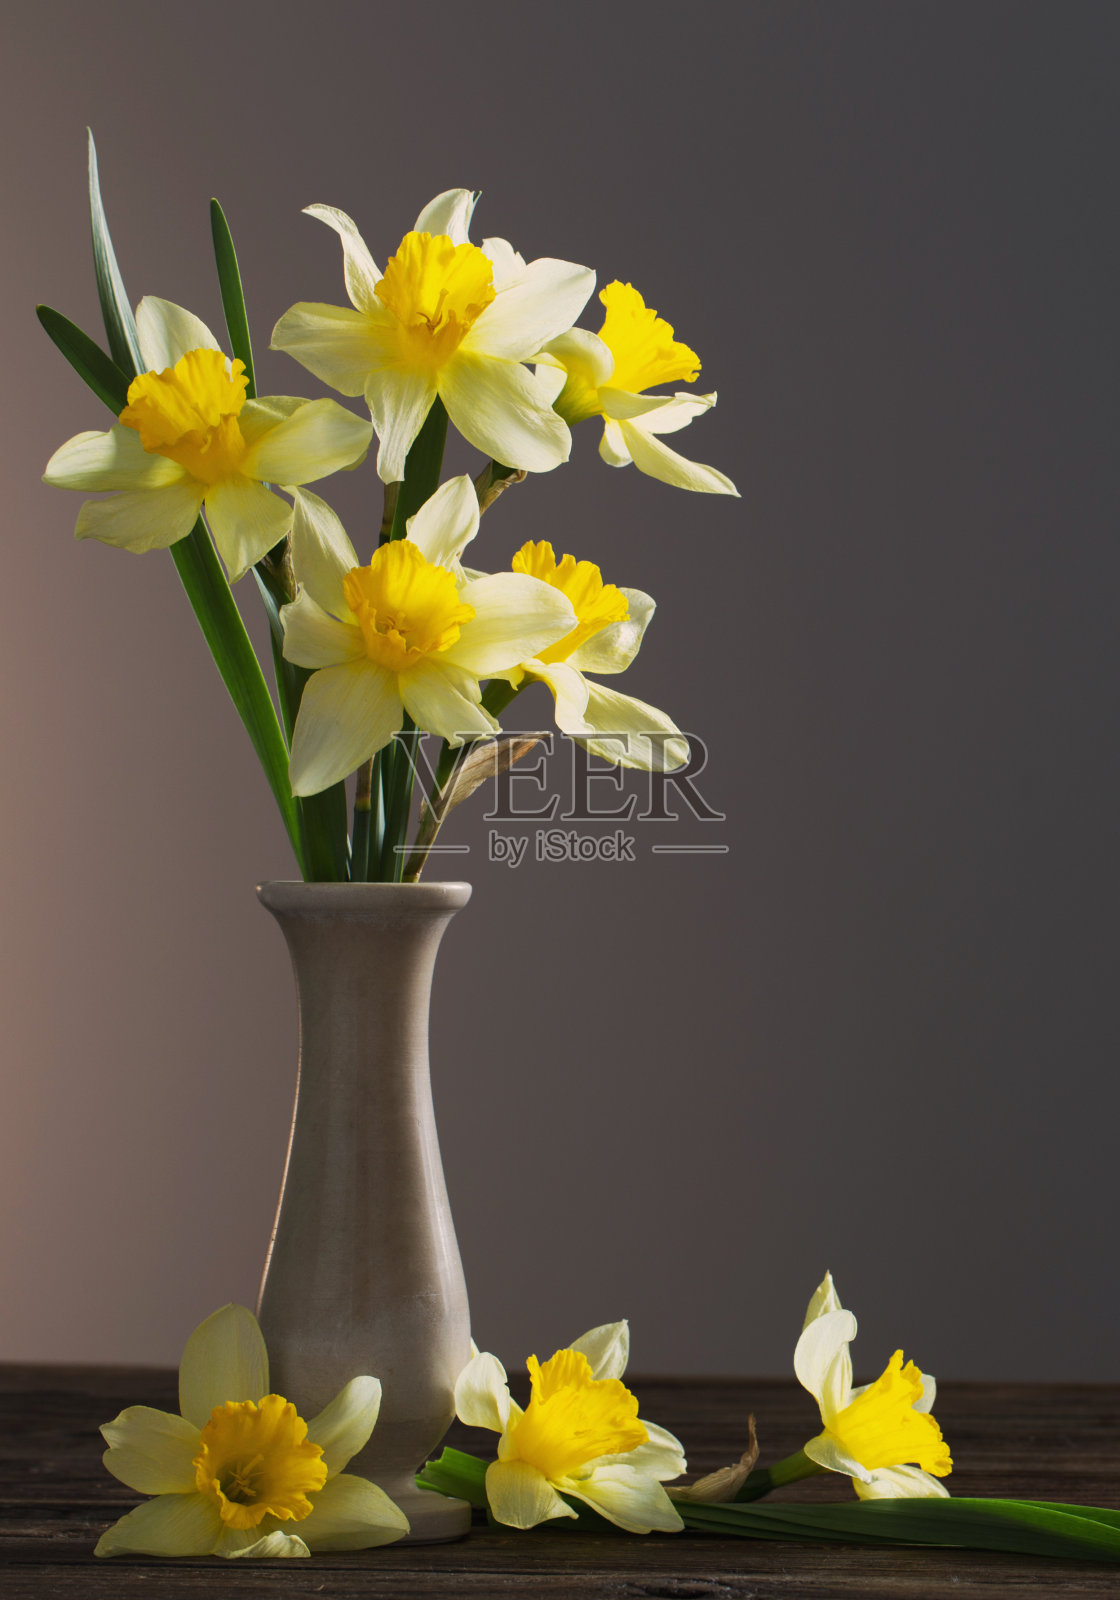 深色背景木桌上花瓶里的黄色水仙照片摄影图片